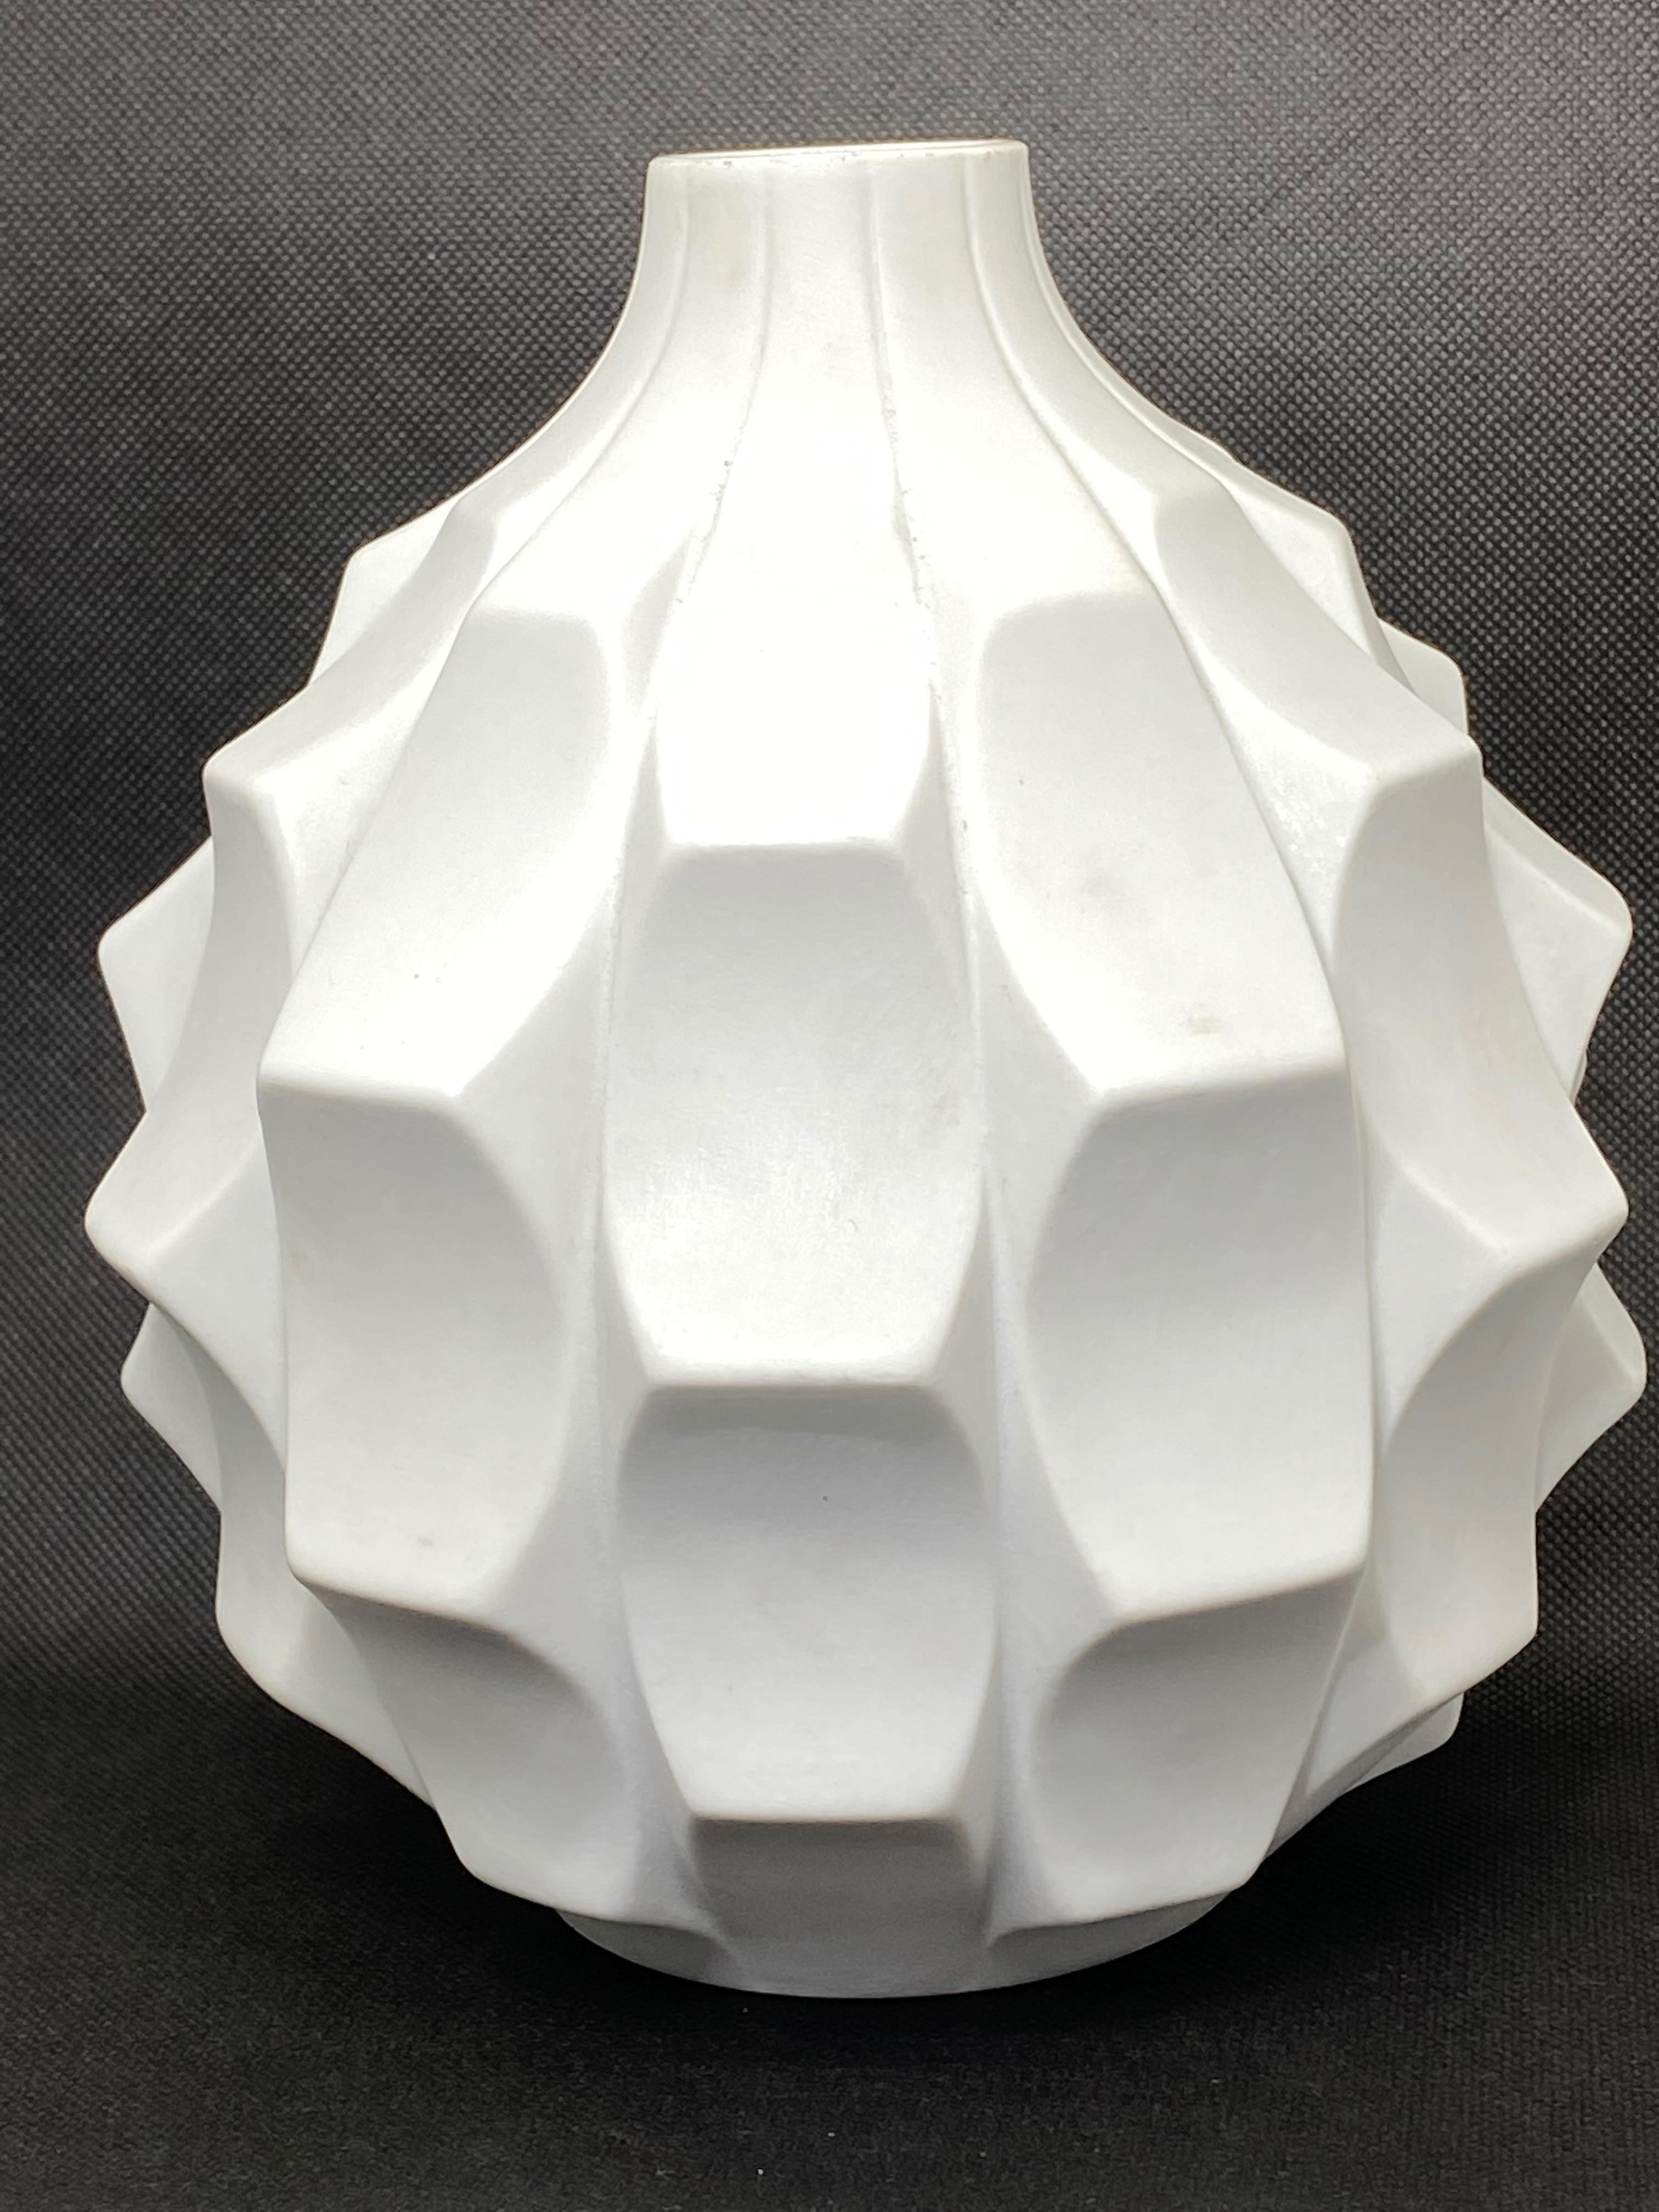 German Midcentury Bisque Artichoke Vase by Heinrich Fuchs for Hutschenreuther, 1960s